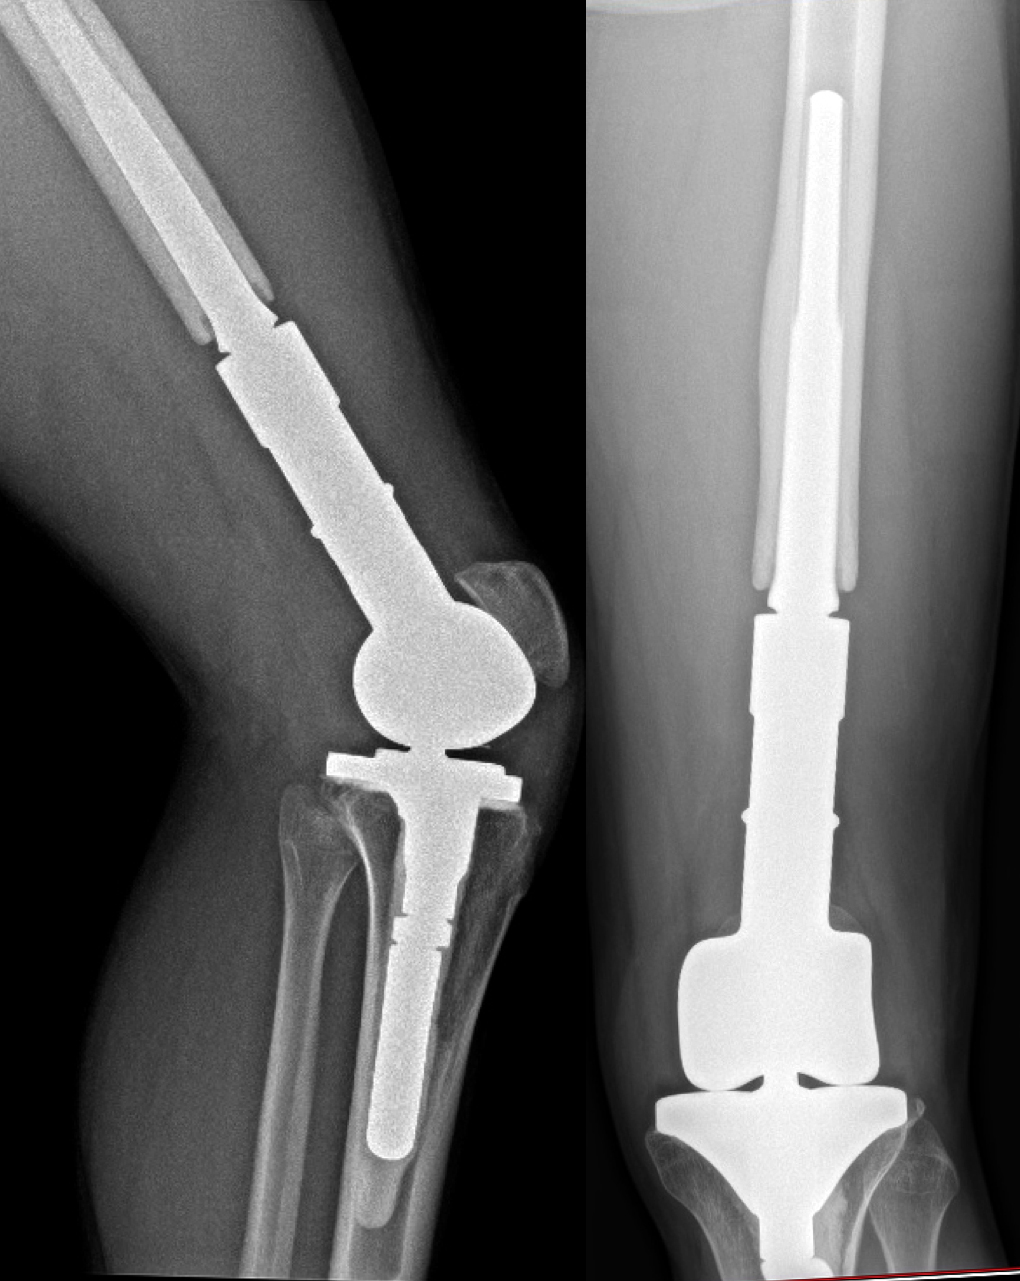 RTG tumorózní náhrady. Zesílení kosti kolem dříku ("stress-shielding") poukazuje na dobrou integraci implantátu, který je mladým člověkem plně zatěžován.